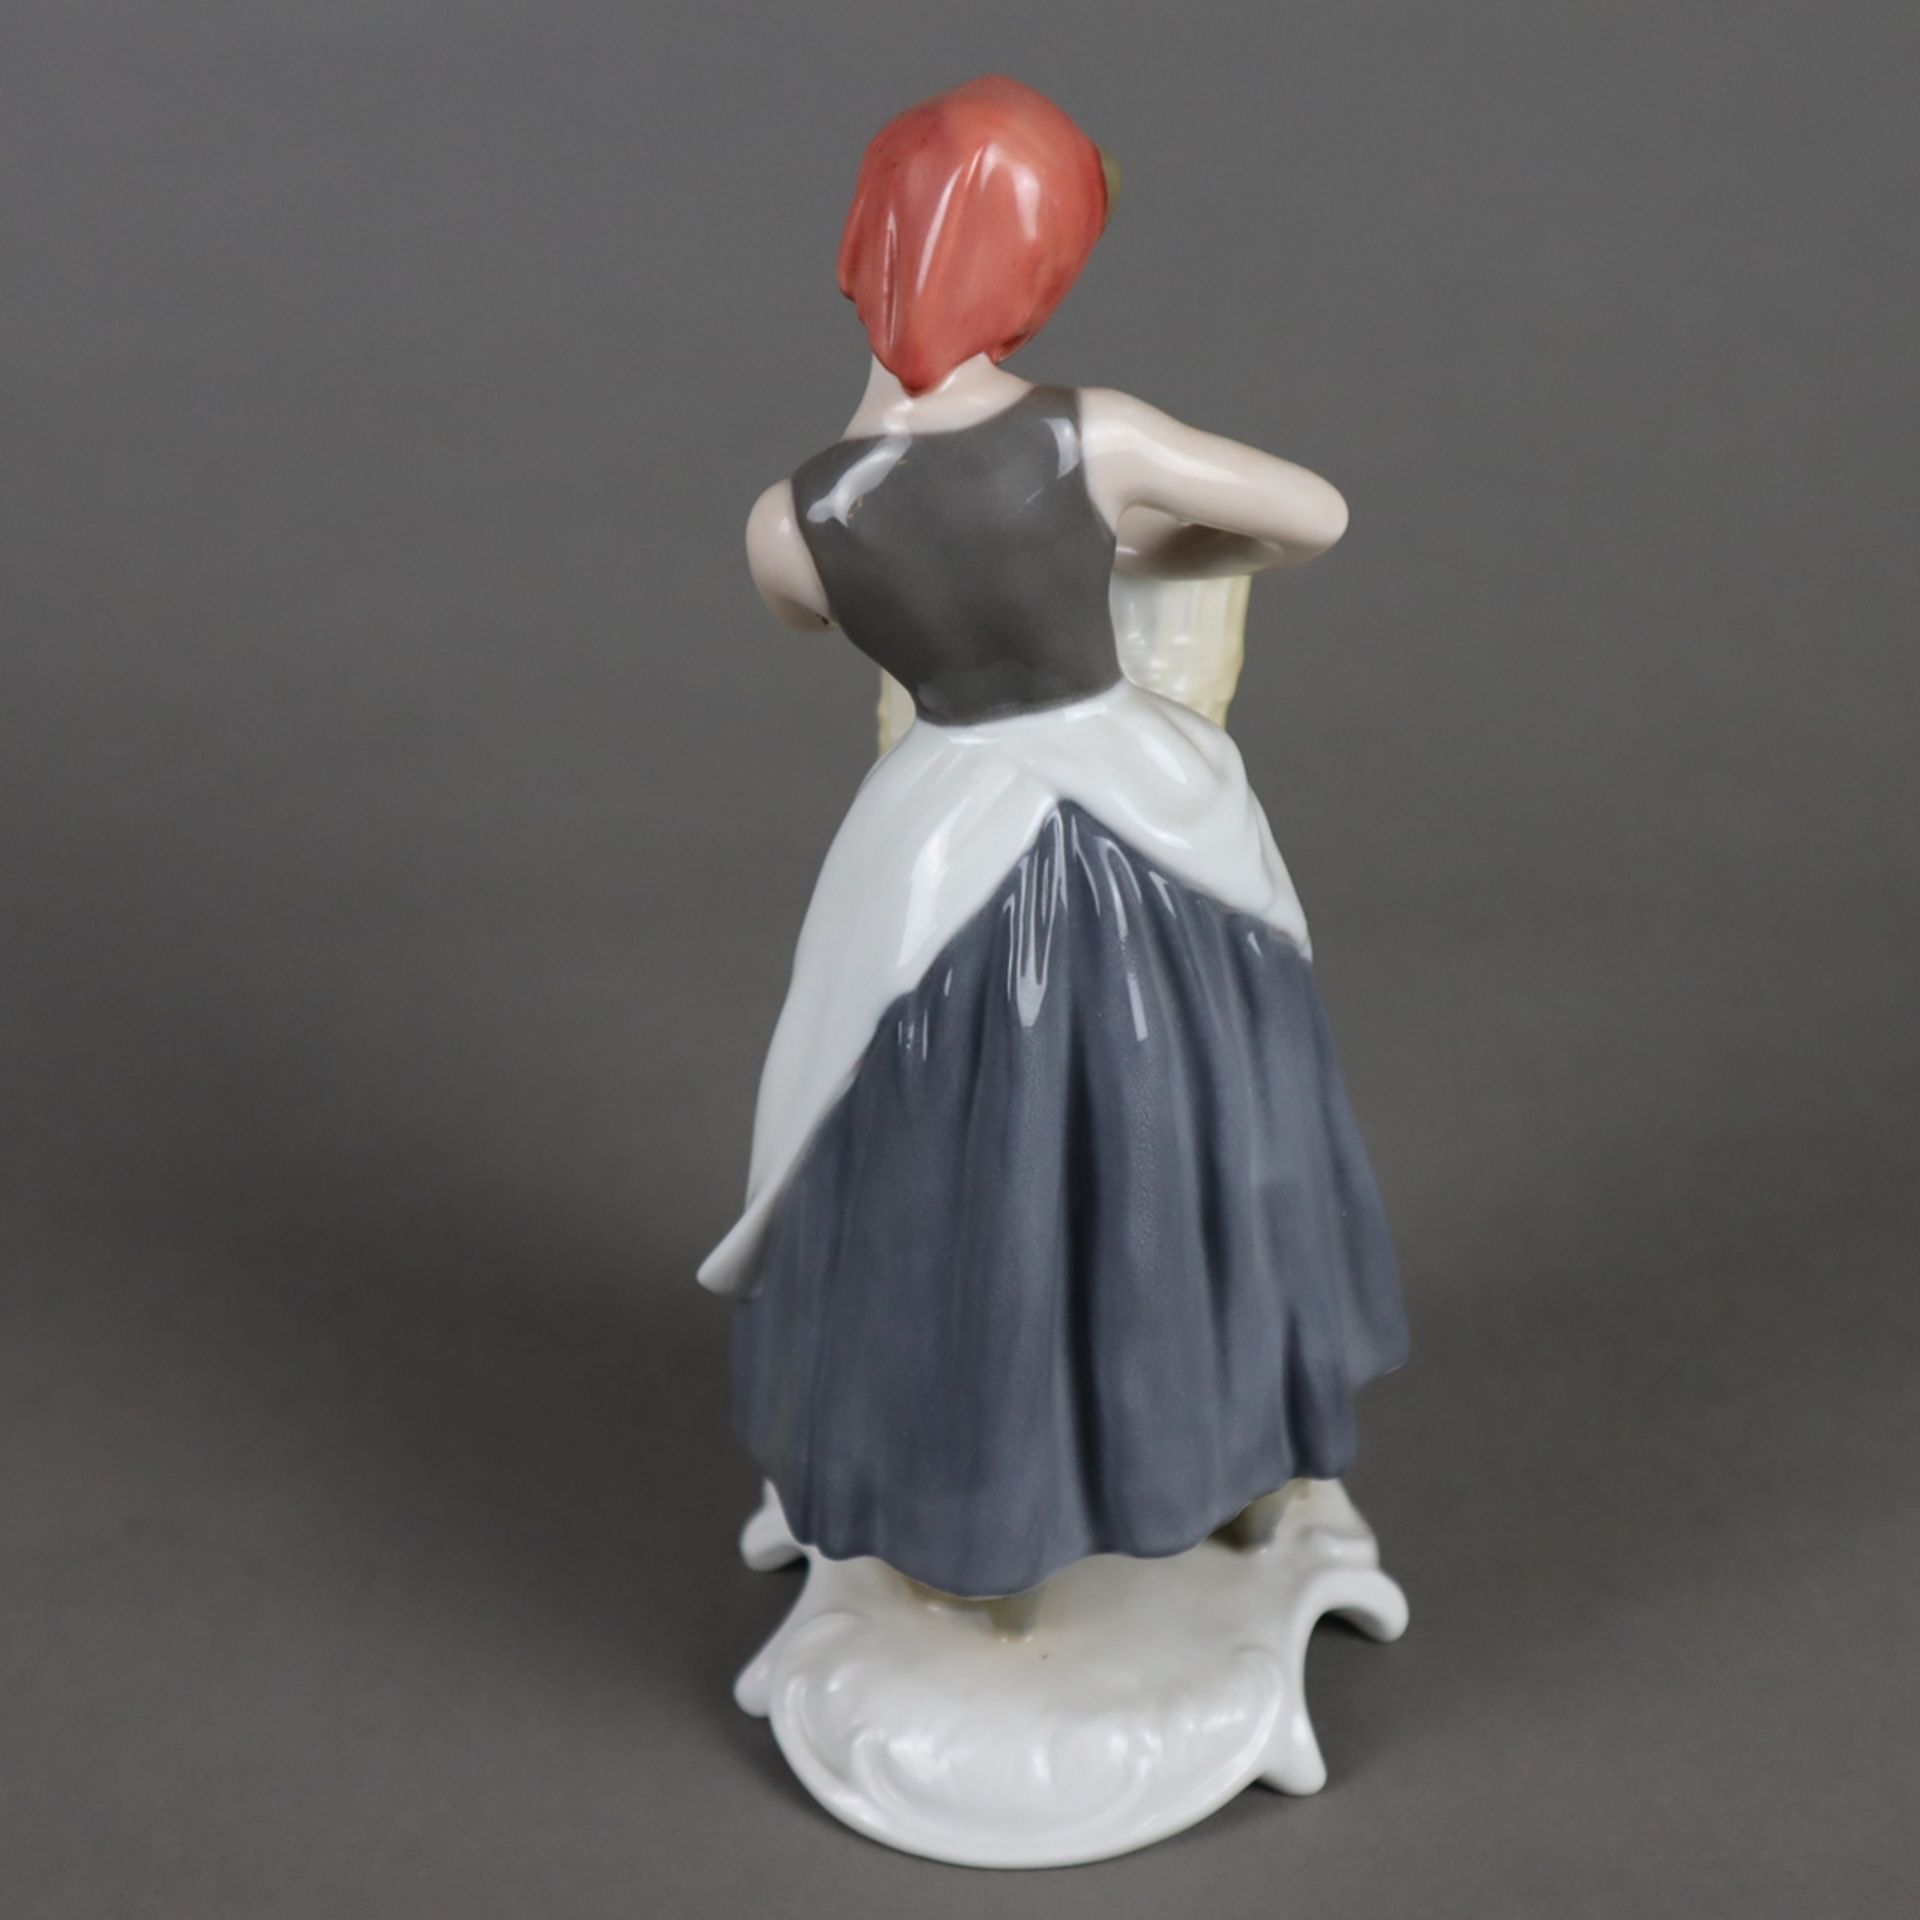 Porzellanfigur "Korbflechterin" - Goebel, Modell-Nr.16 053 aus der Handwerker-Serie, Porzellan, pol - Image 3 of 8